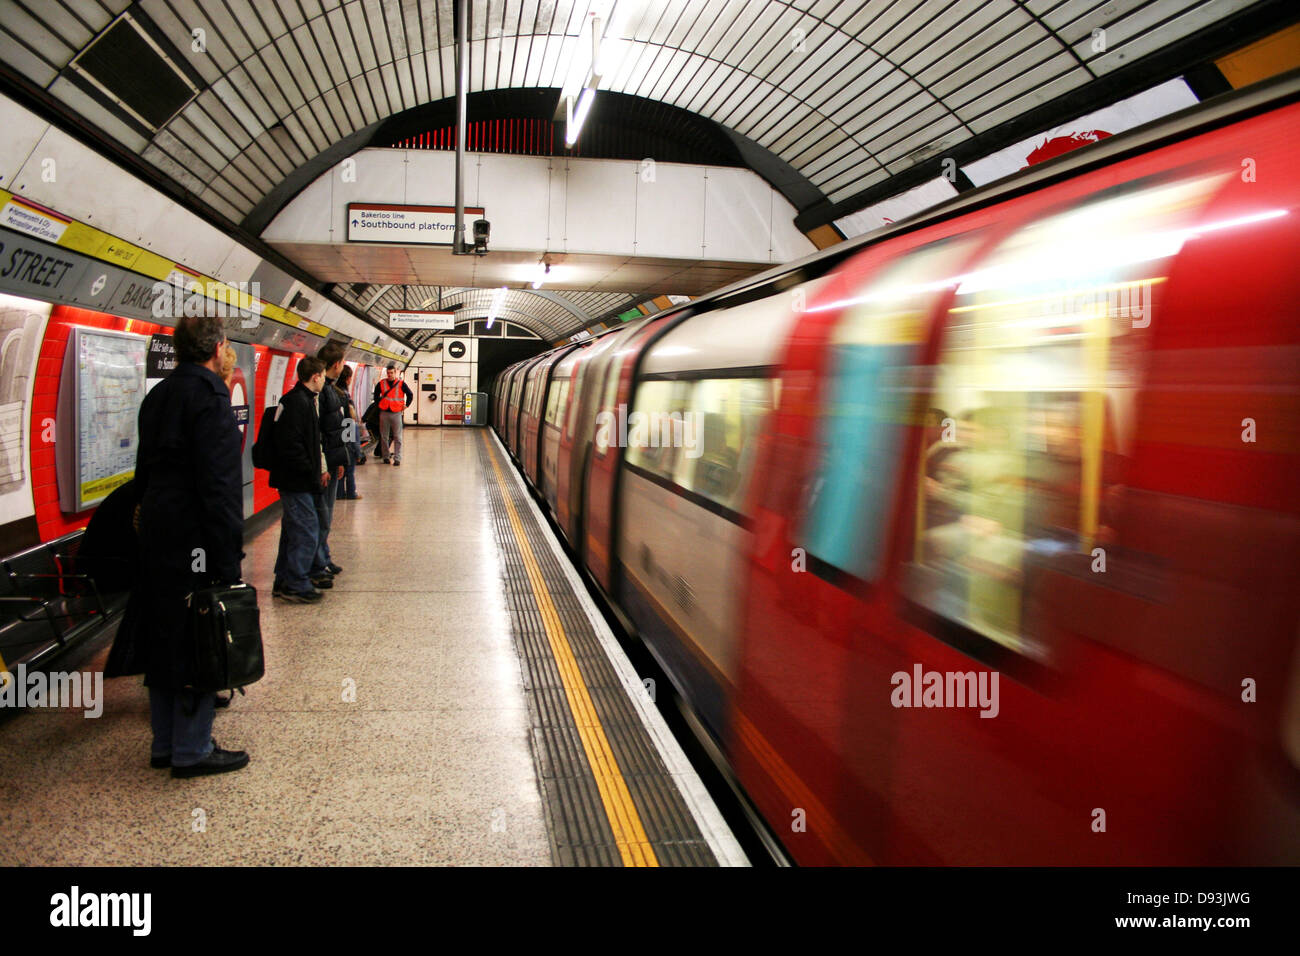 Londres métro train voyage britannique Banque D'Images